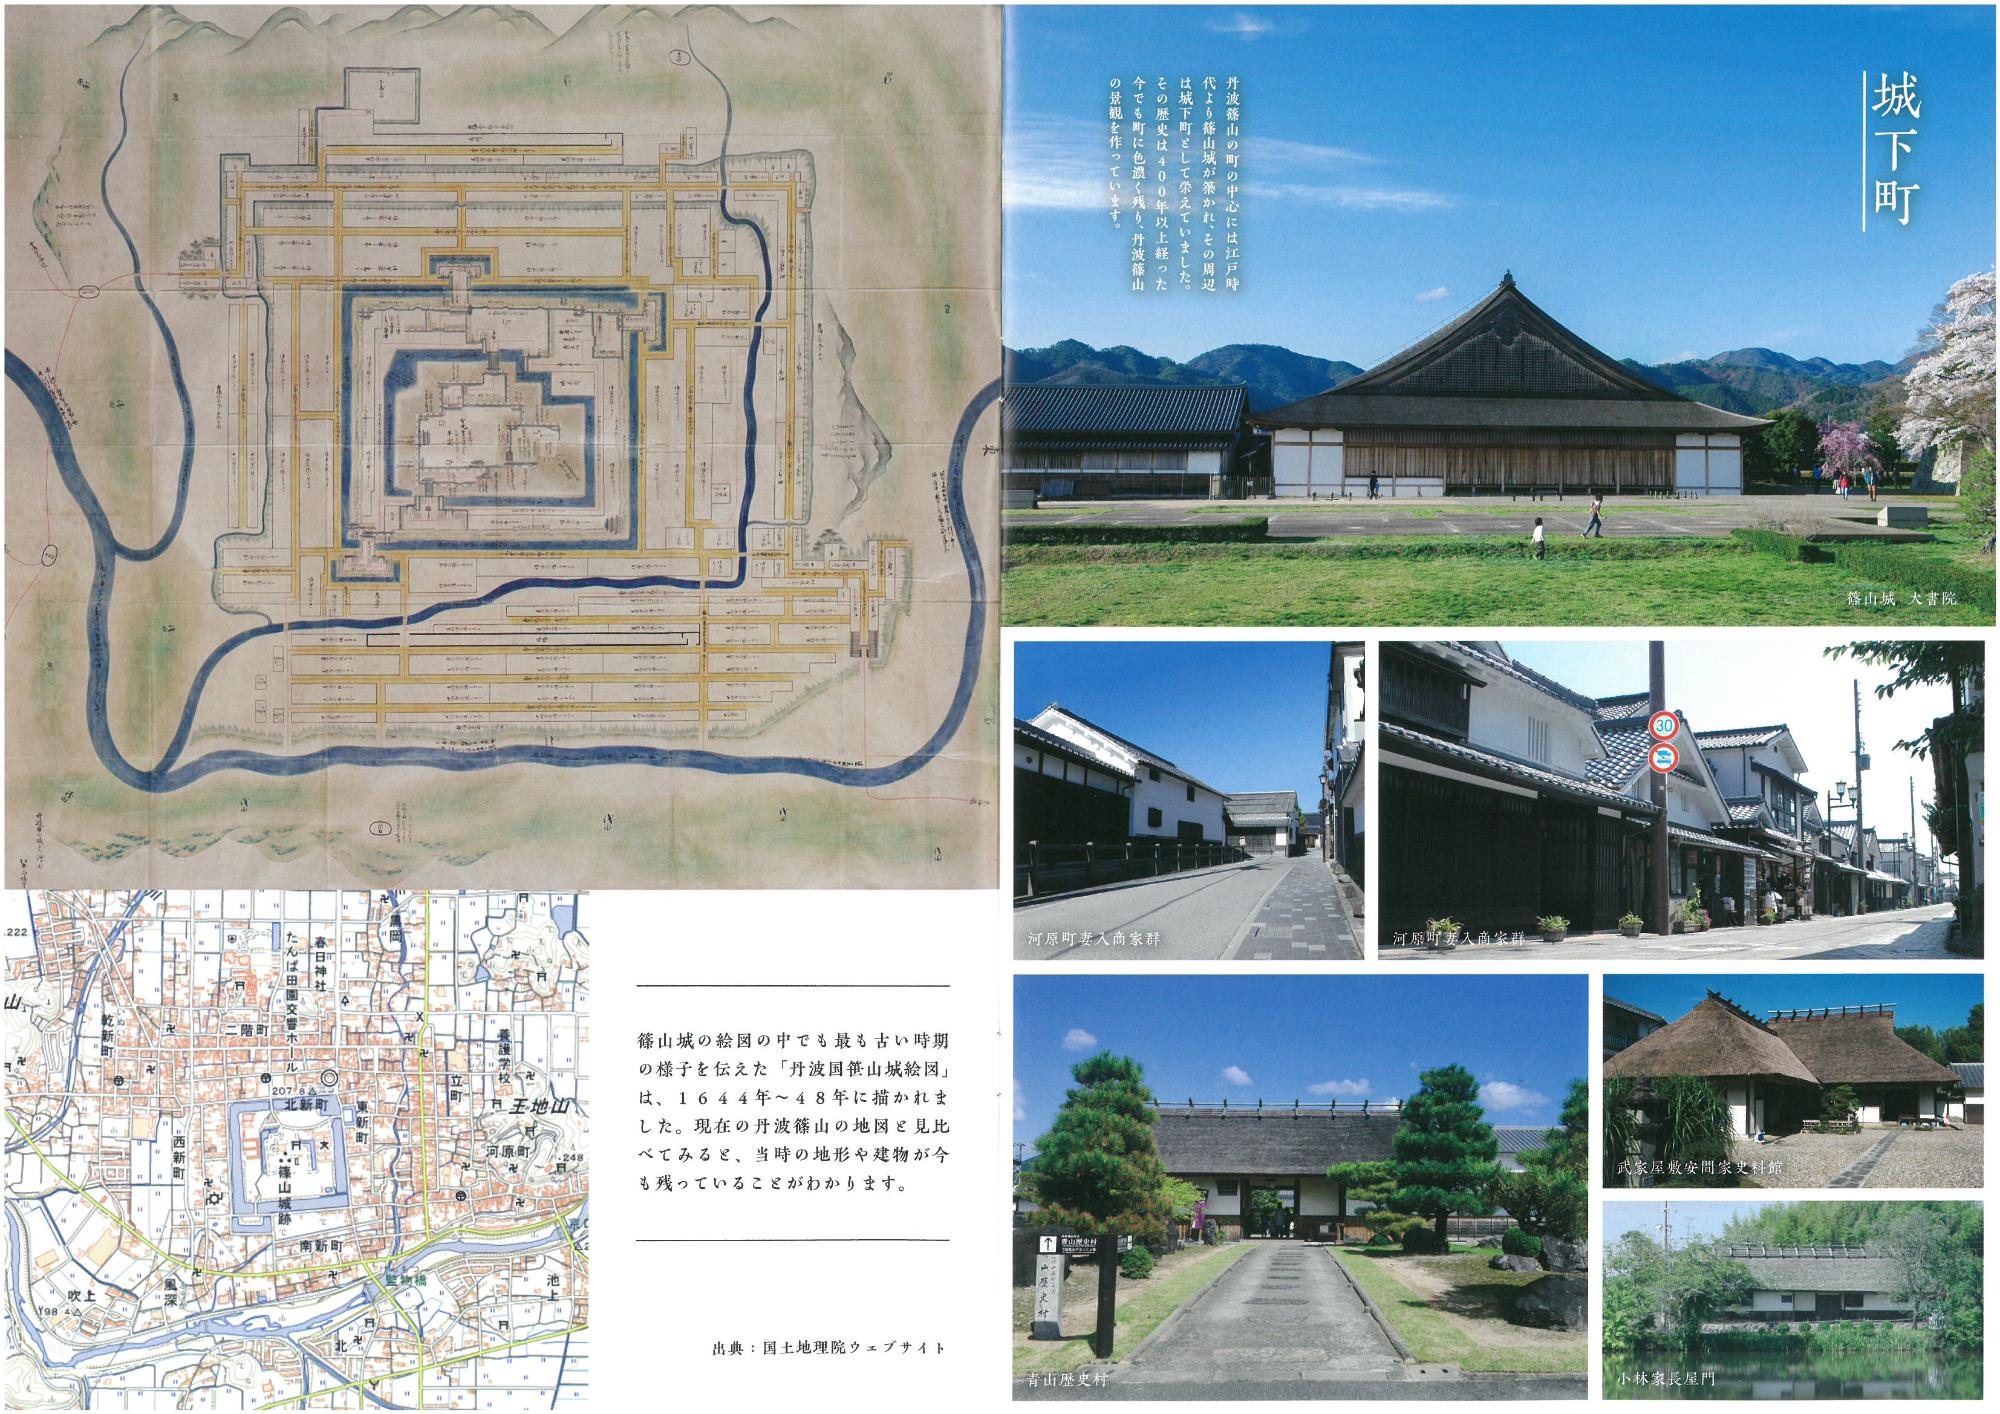 城下町の風景写真と古い地図が掲載されている。青山歴史村、大書院など。